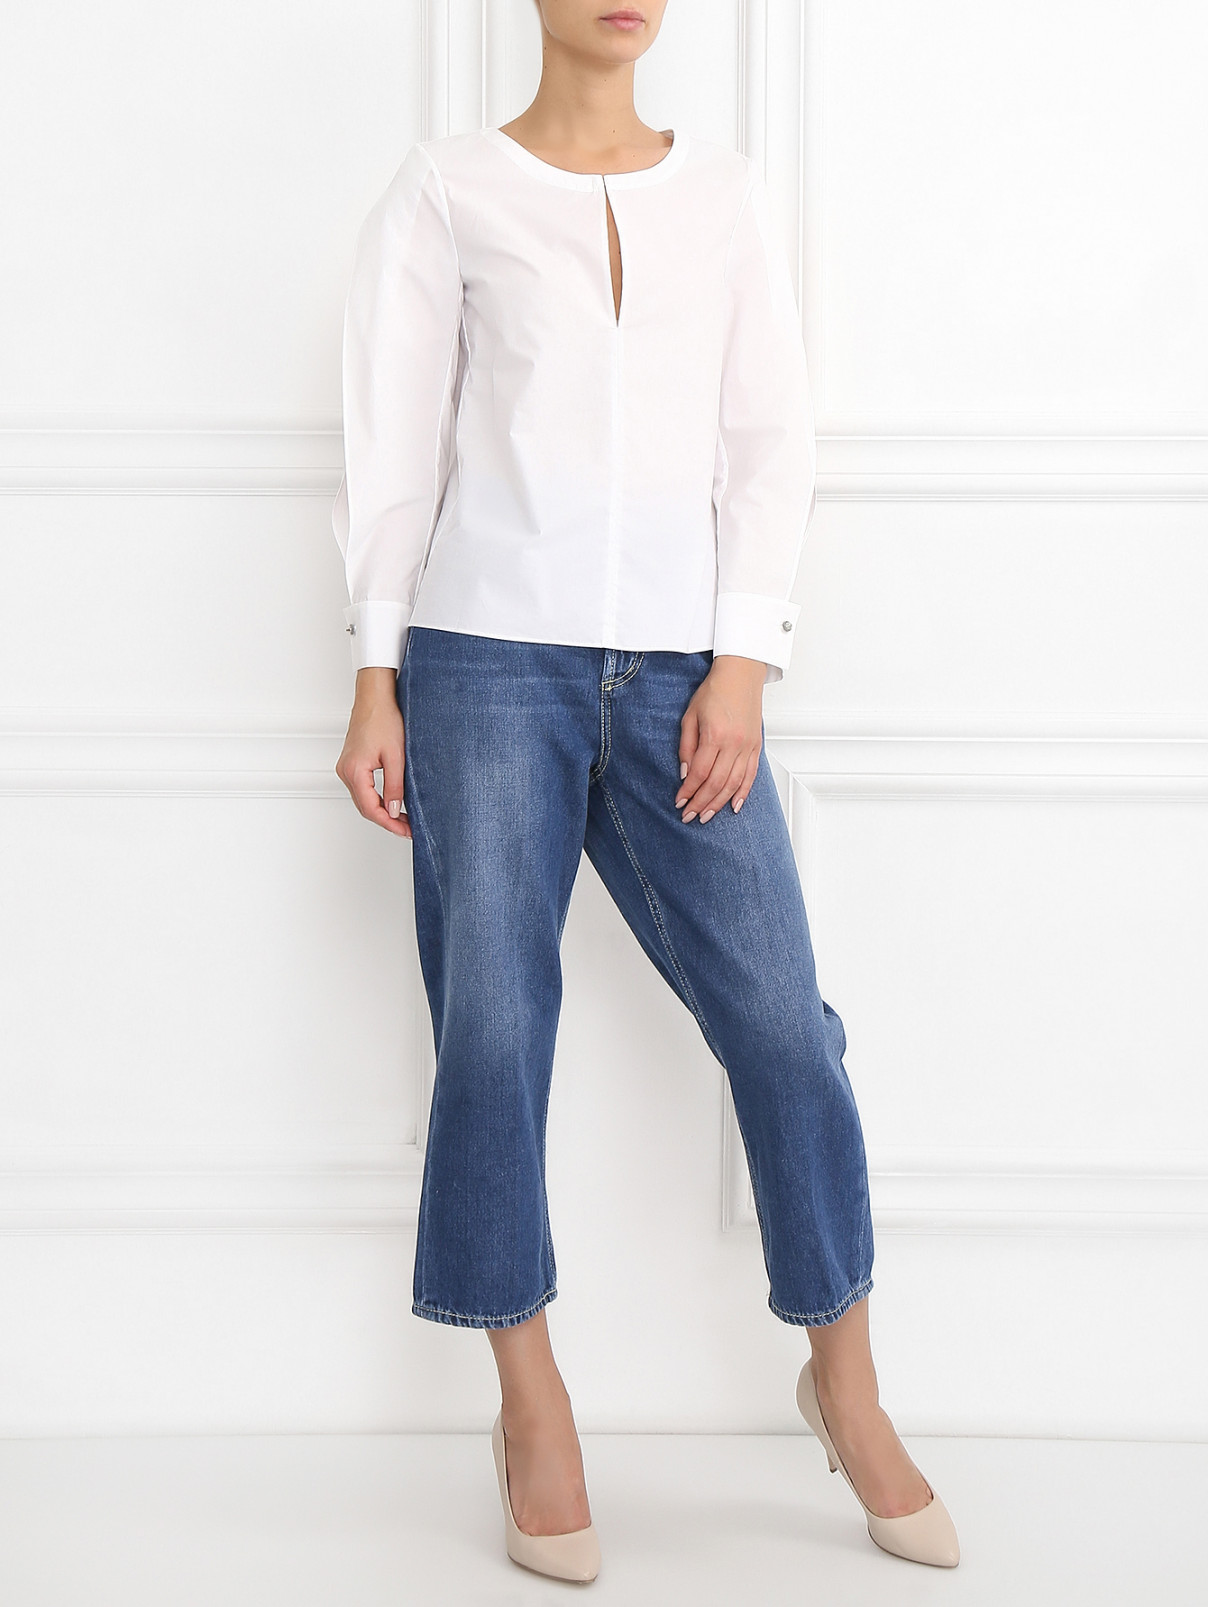 Блуза из хлопка с длинными рукавами Dorothee Schumacher  –  Модель Общий вид  – Цвет:  Белый